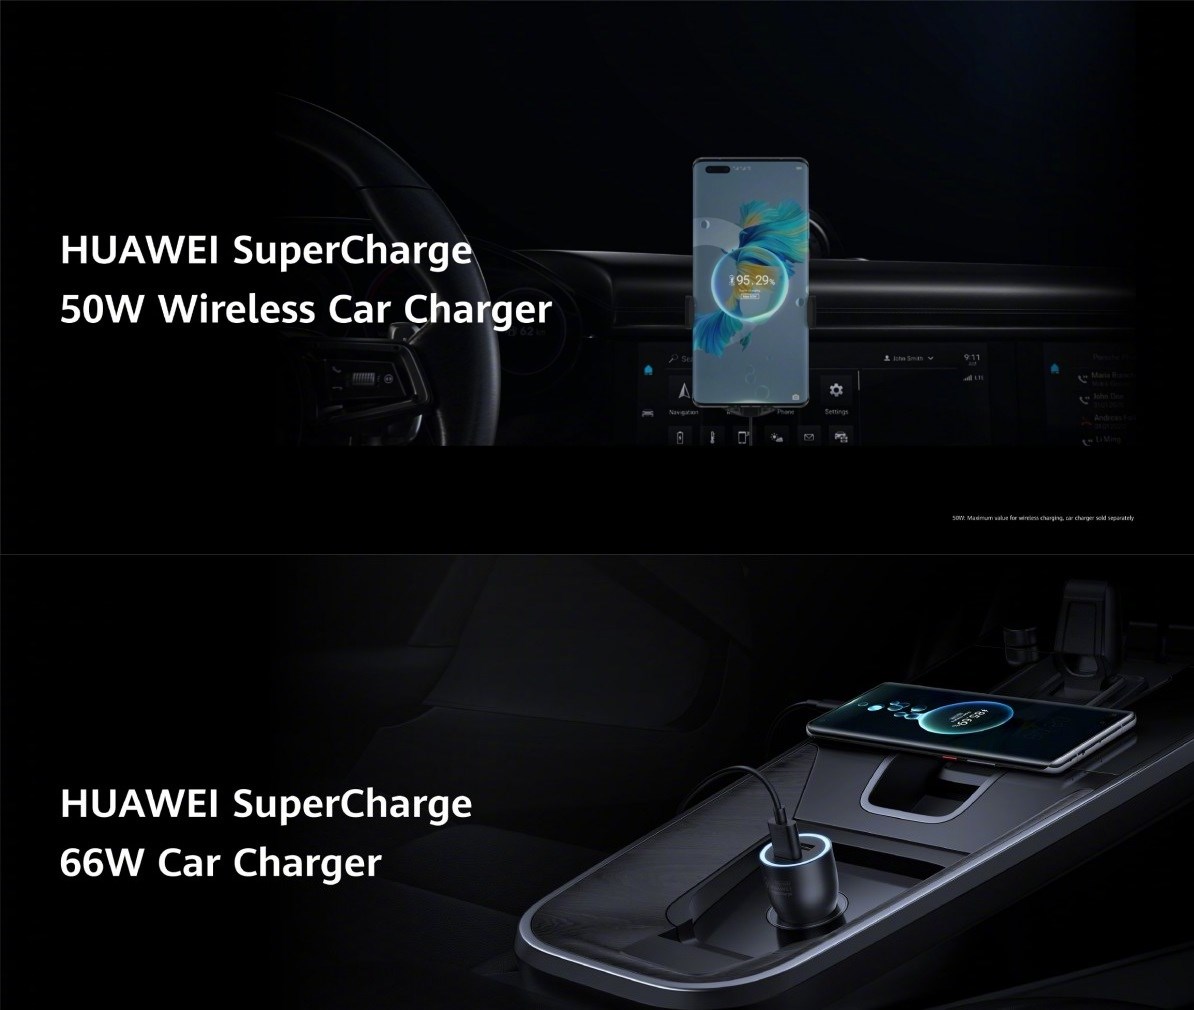 Huawei M-Pen 2 ve hızlı şarj ürünleri tanıtıldı